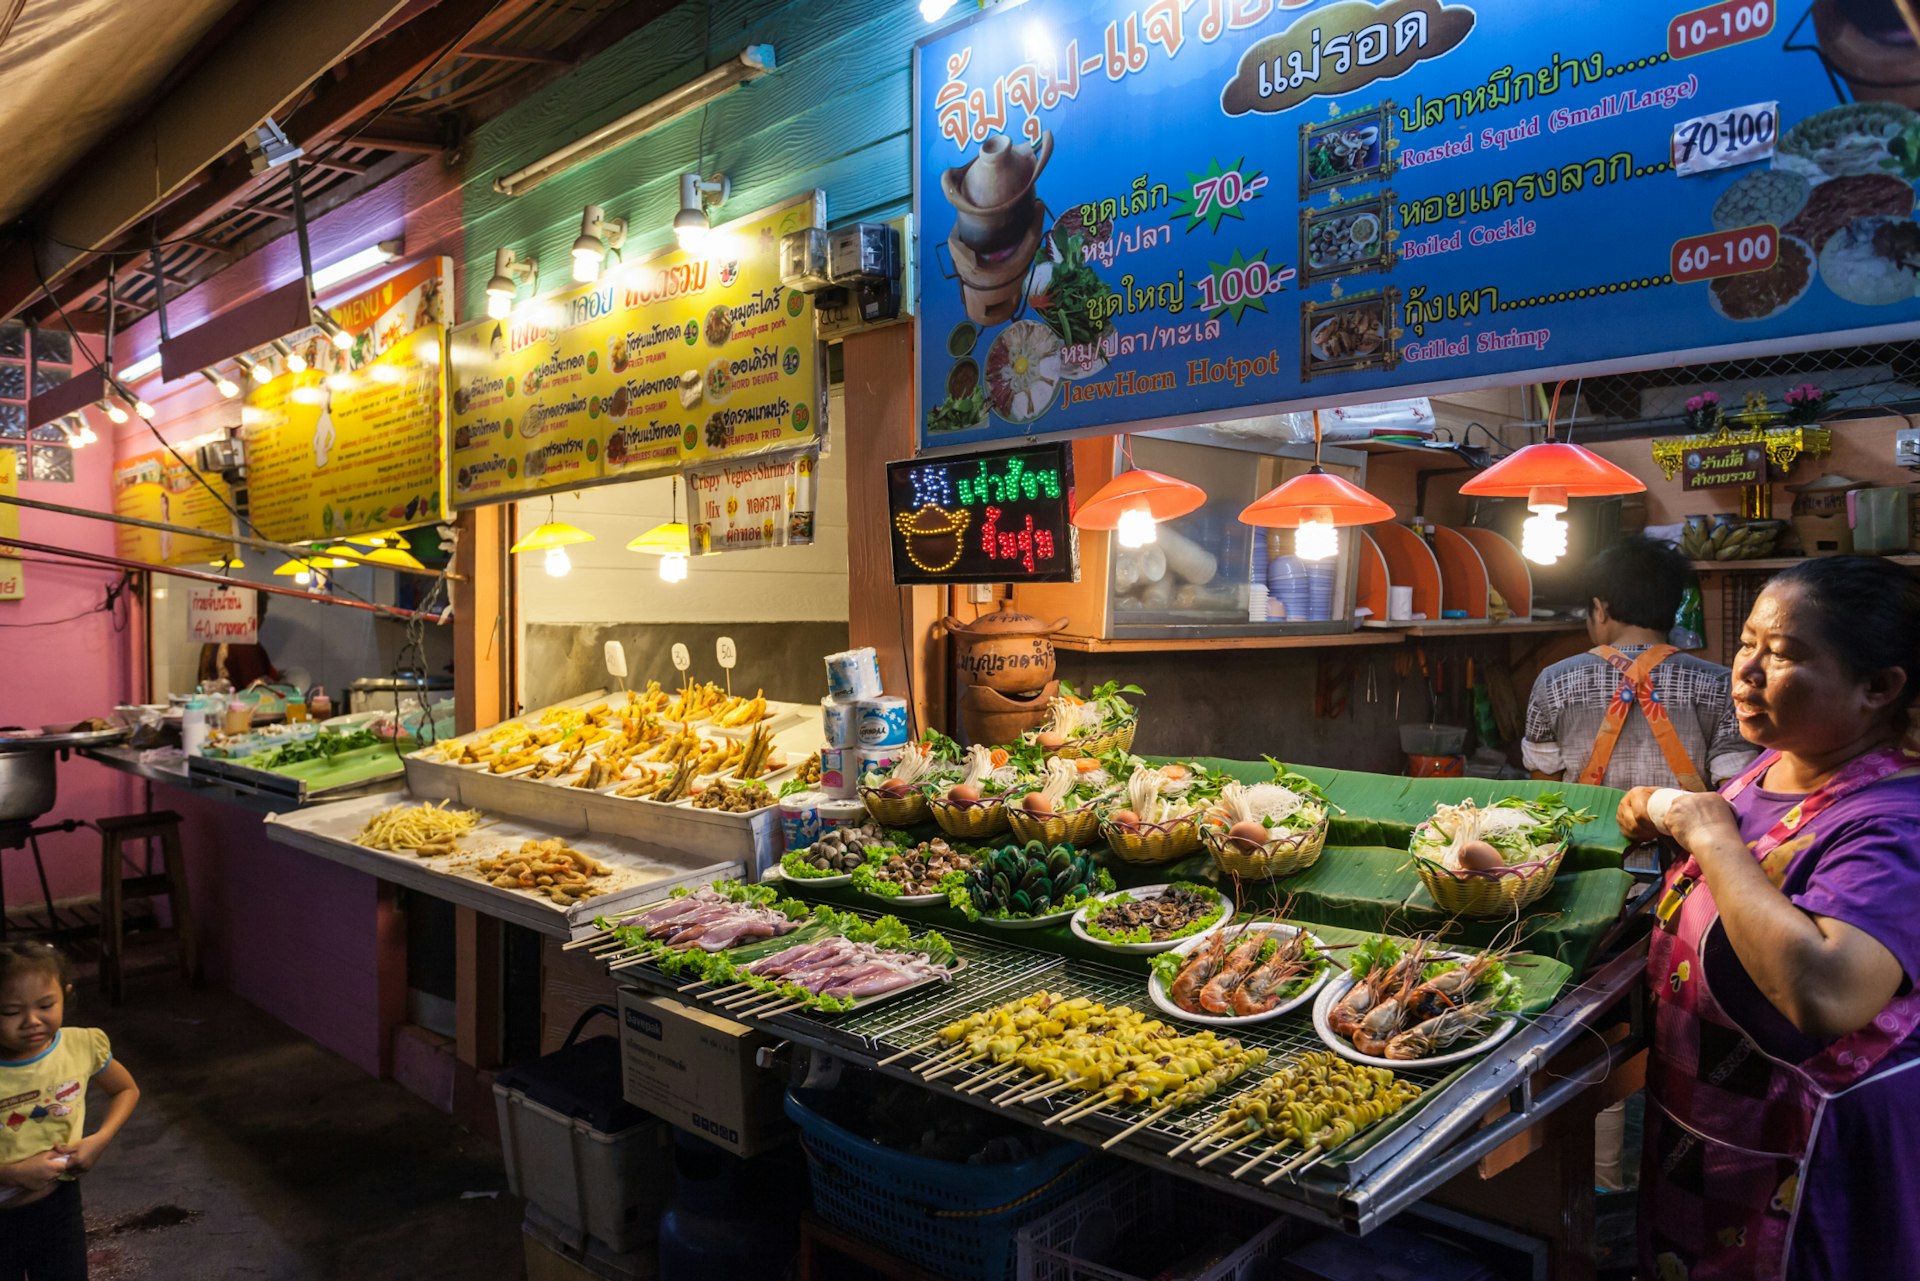  Food Court at Chiang Rai Night Market